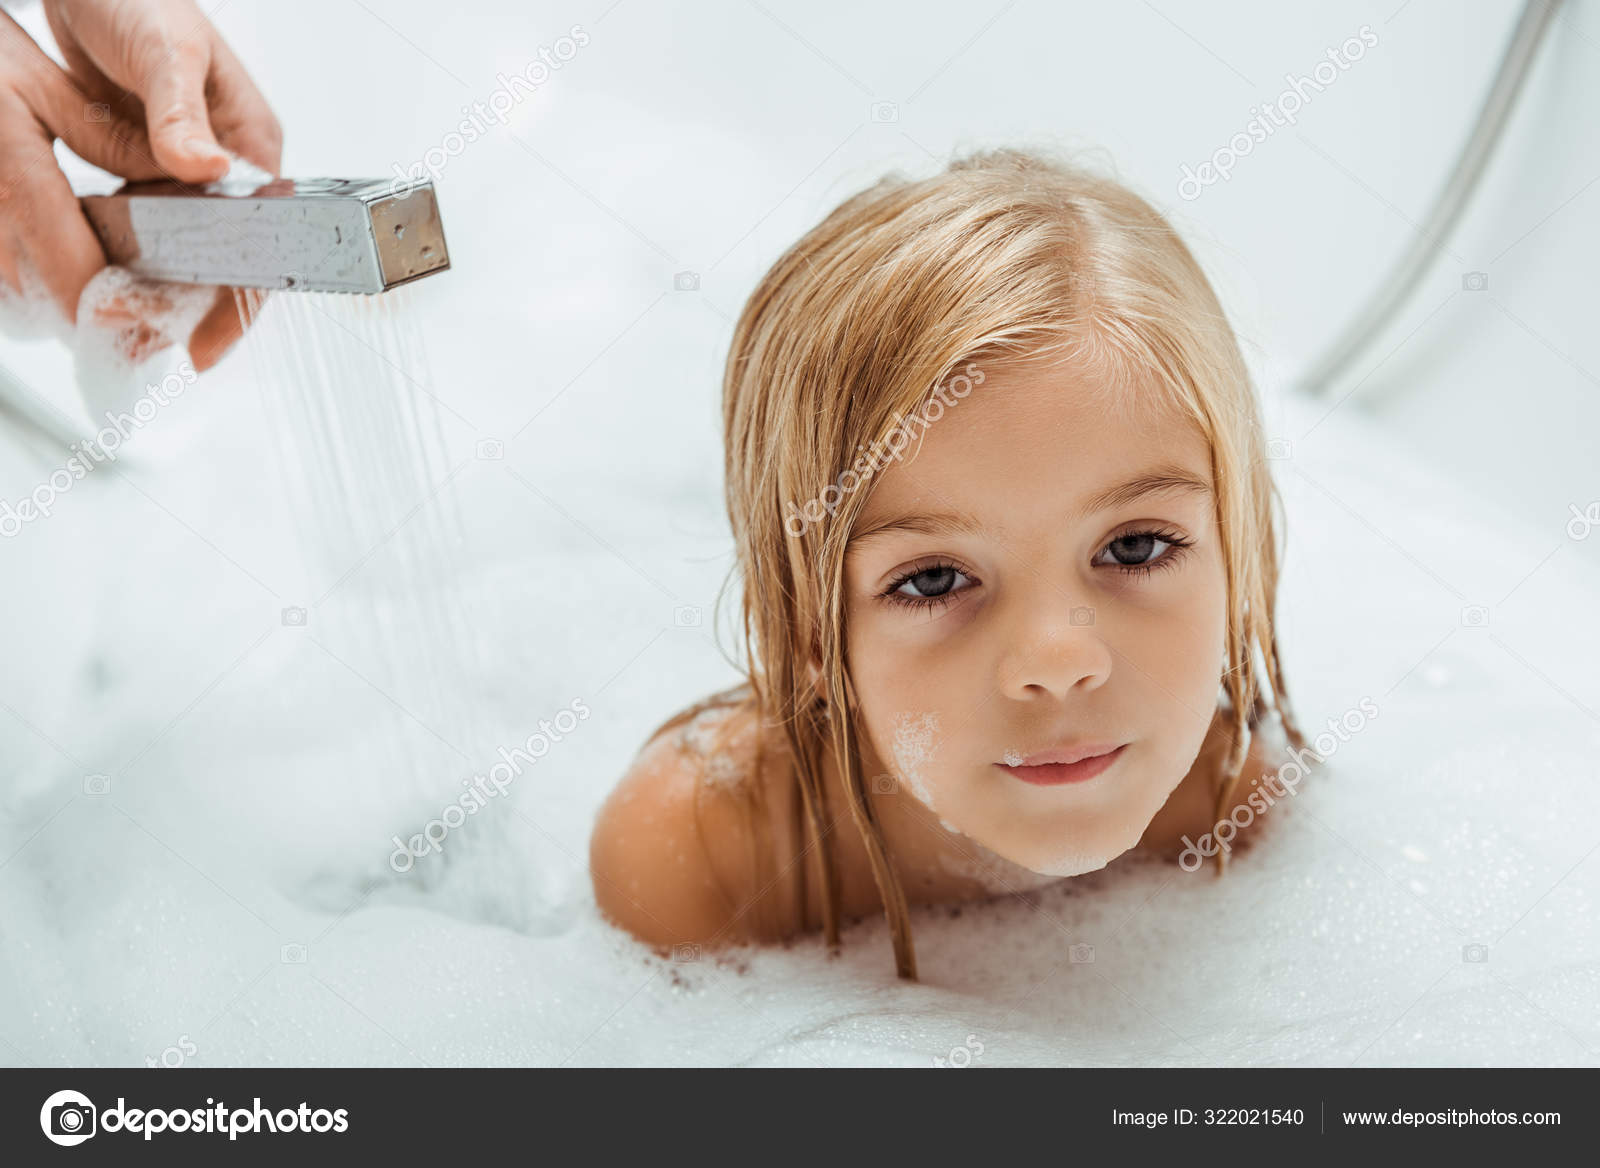 小男孩在洗澡高清摄影大图-千库网